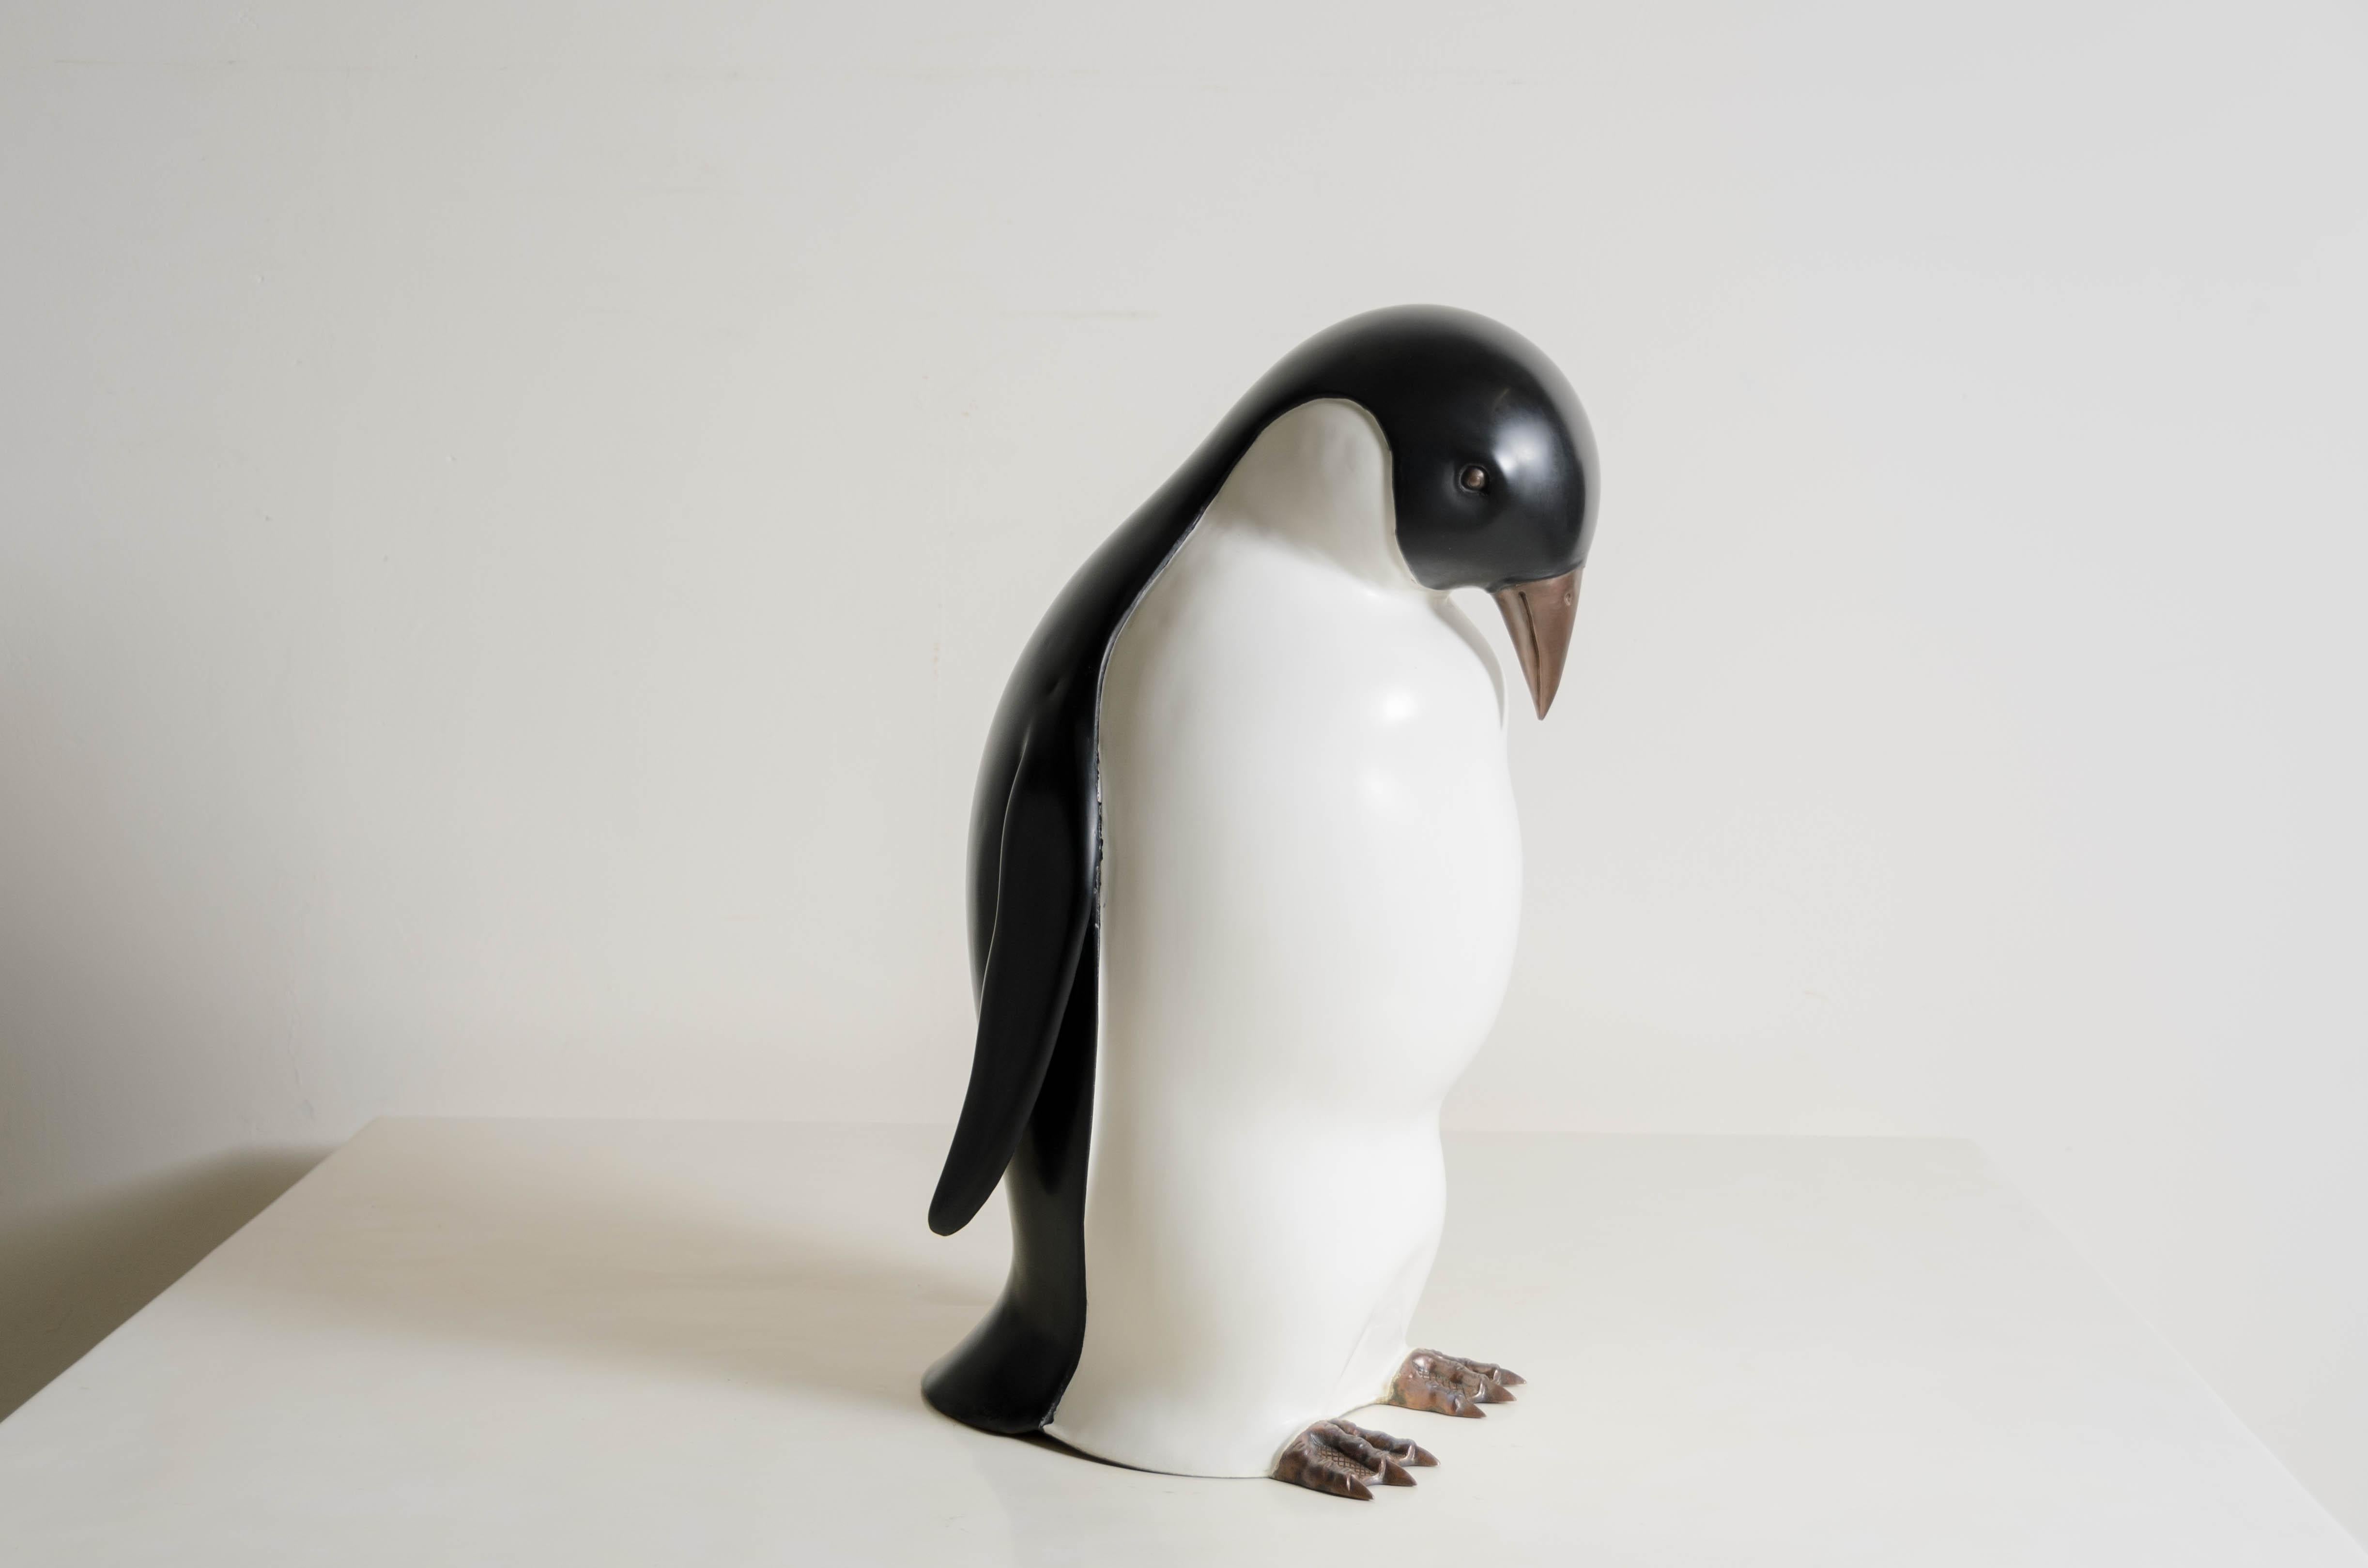 Pinguin mit Kopf nach unten
Schwarzer Lack
Crean-Lack
Antikes Kupfer
Hand-Repoussé
Limitierte Auflage
Jedes Stück wird individuell angefertigt und ist einzigartig. 
Repoussé ist die traditionelle Kunst, ein dekoratives Relief von Hand auf ein